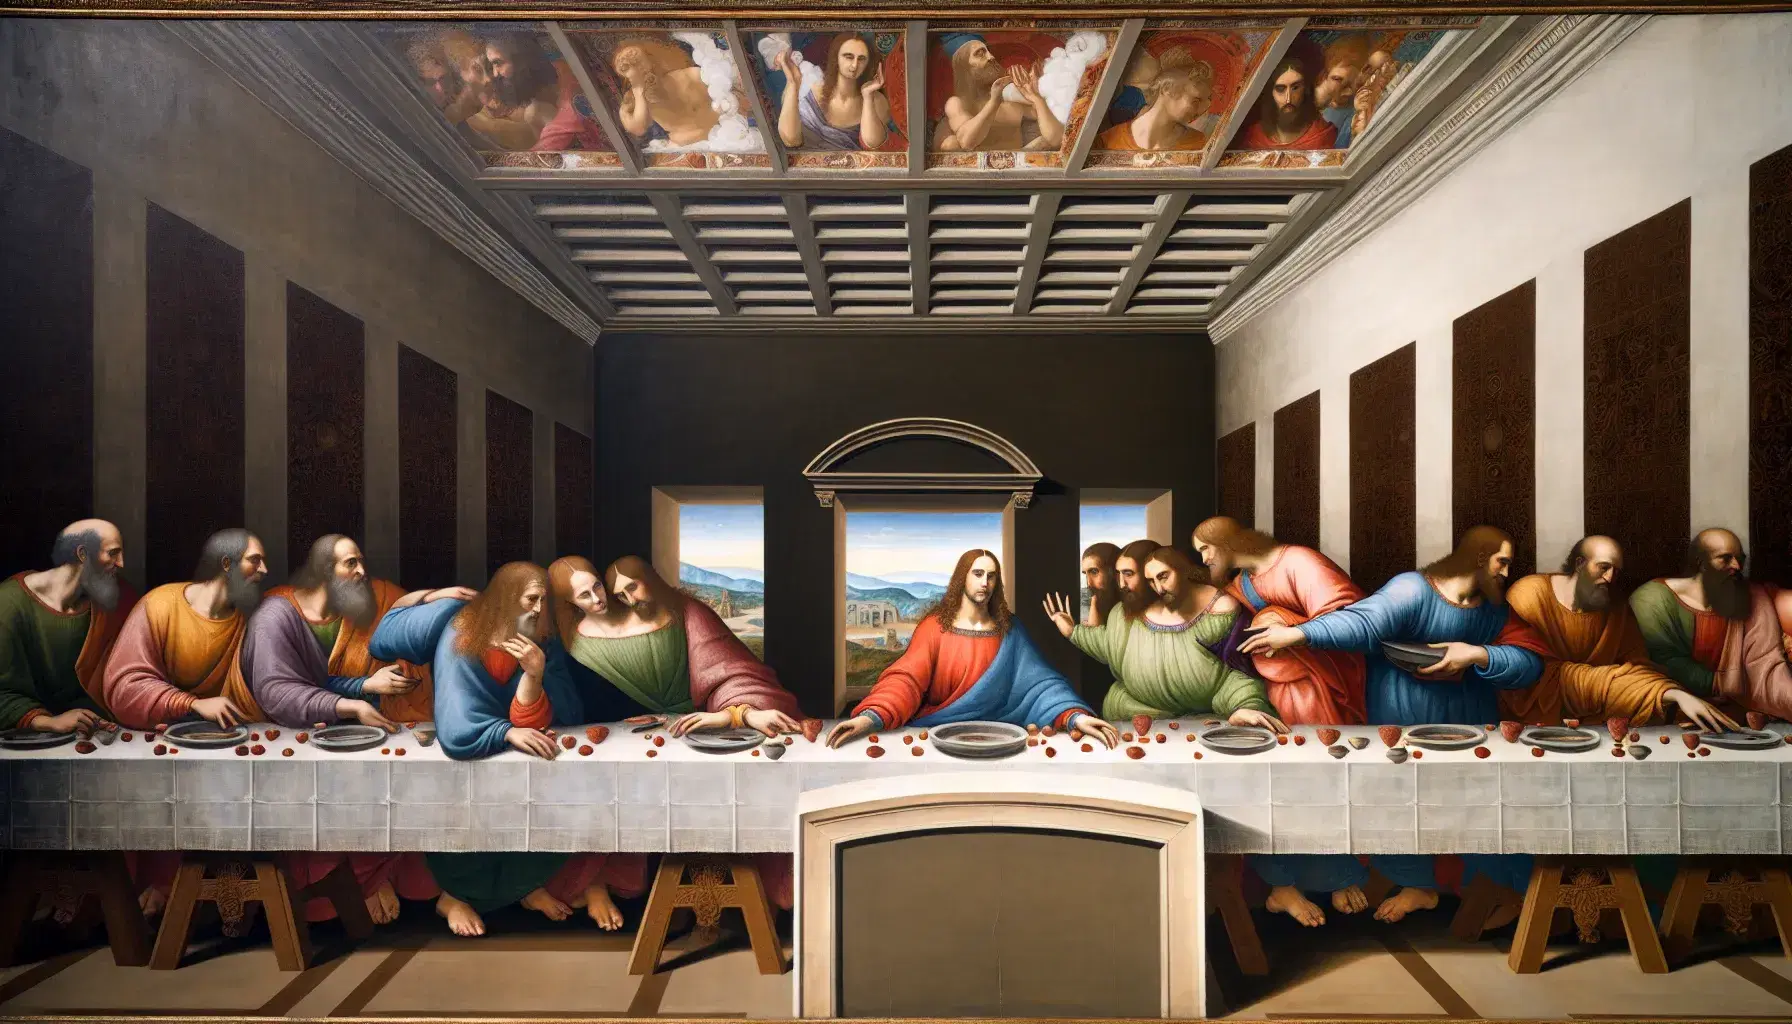 Riproduzione ad alta risoluzione de 'L'Ultima Cena' di Leonardo da Vinci, con tredici figure intorno a un tavolo in una sala a volta.